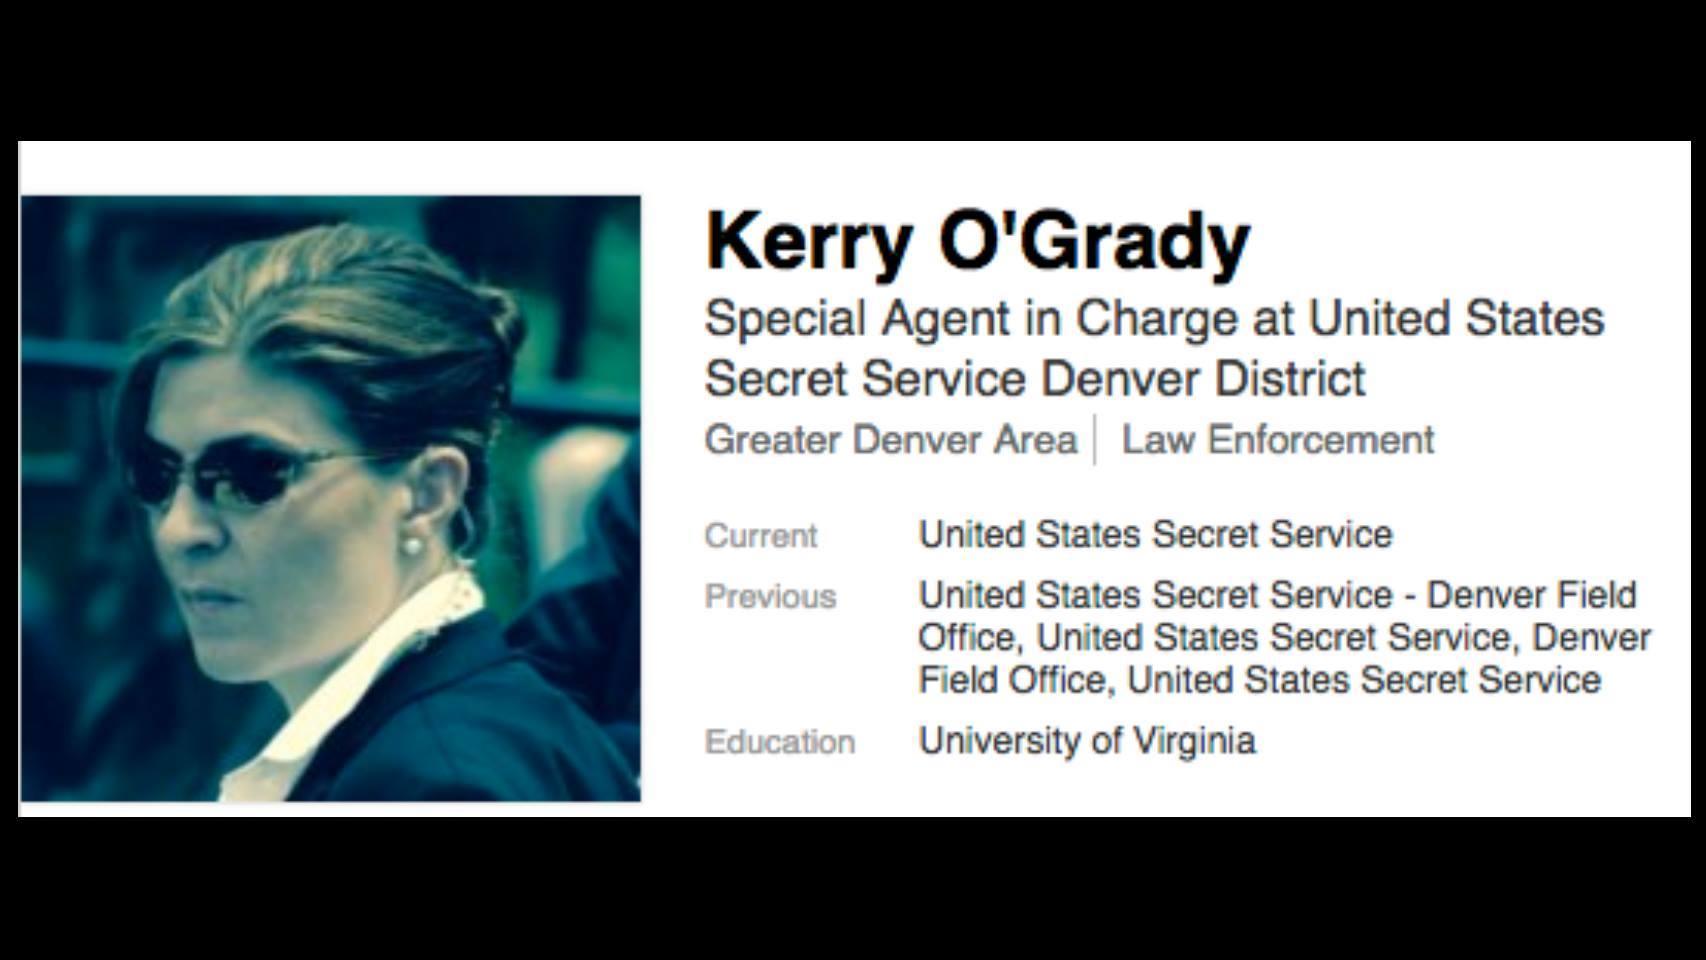 El perfil profesional de Kerry O'Grady en las redes sociales.